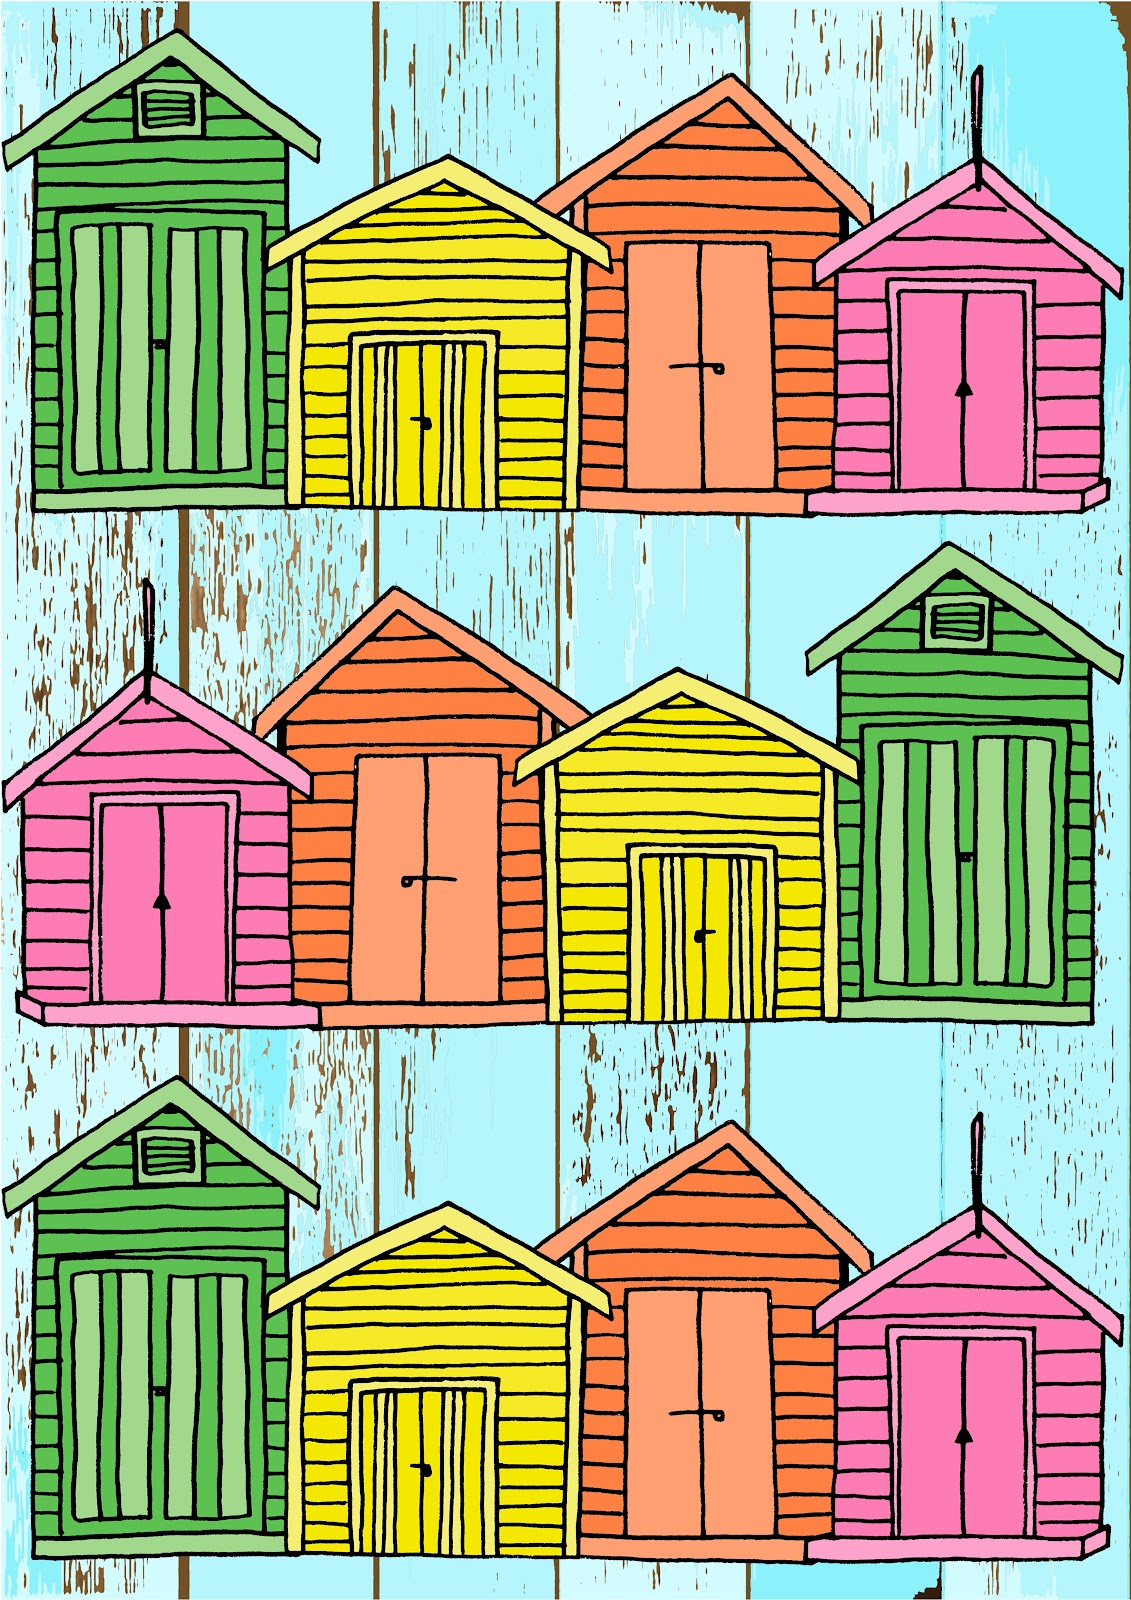 cremefarbene und braune tapetenentwürfe,linie,dach,zuhause,eigentum,illustration